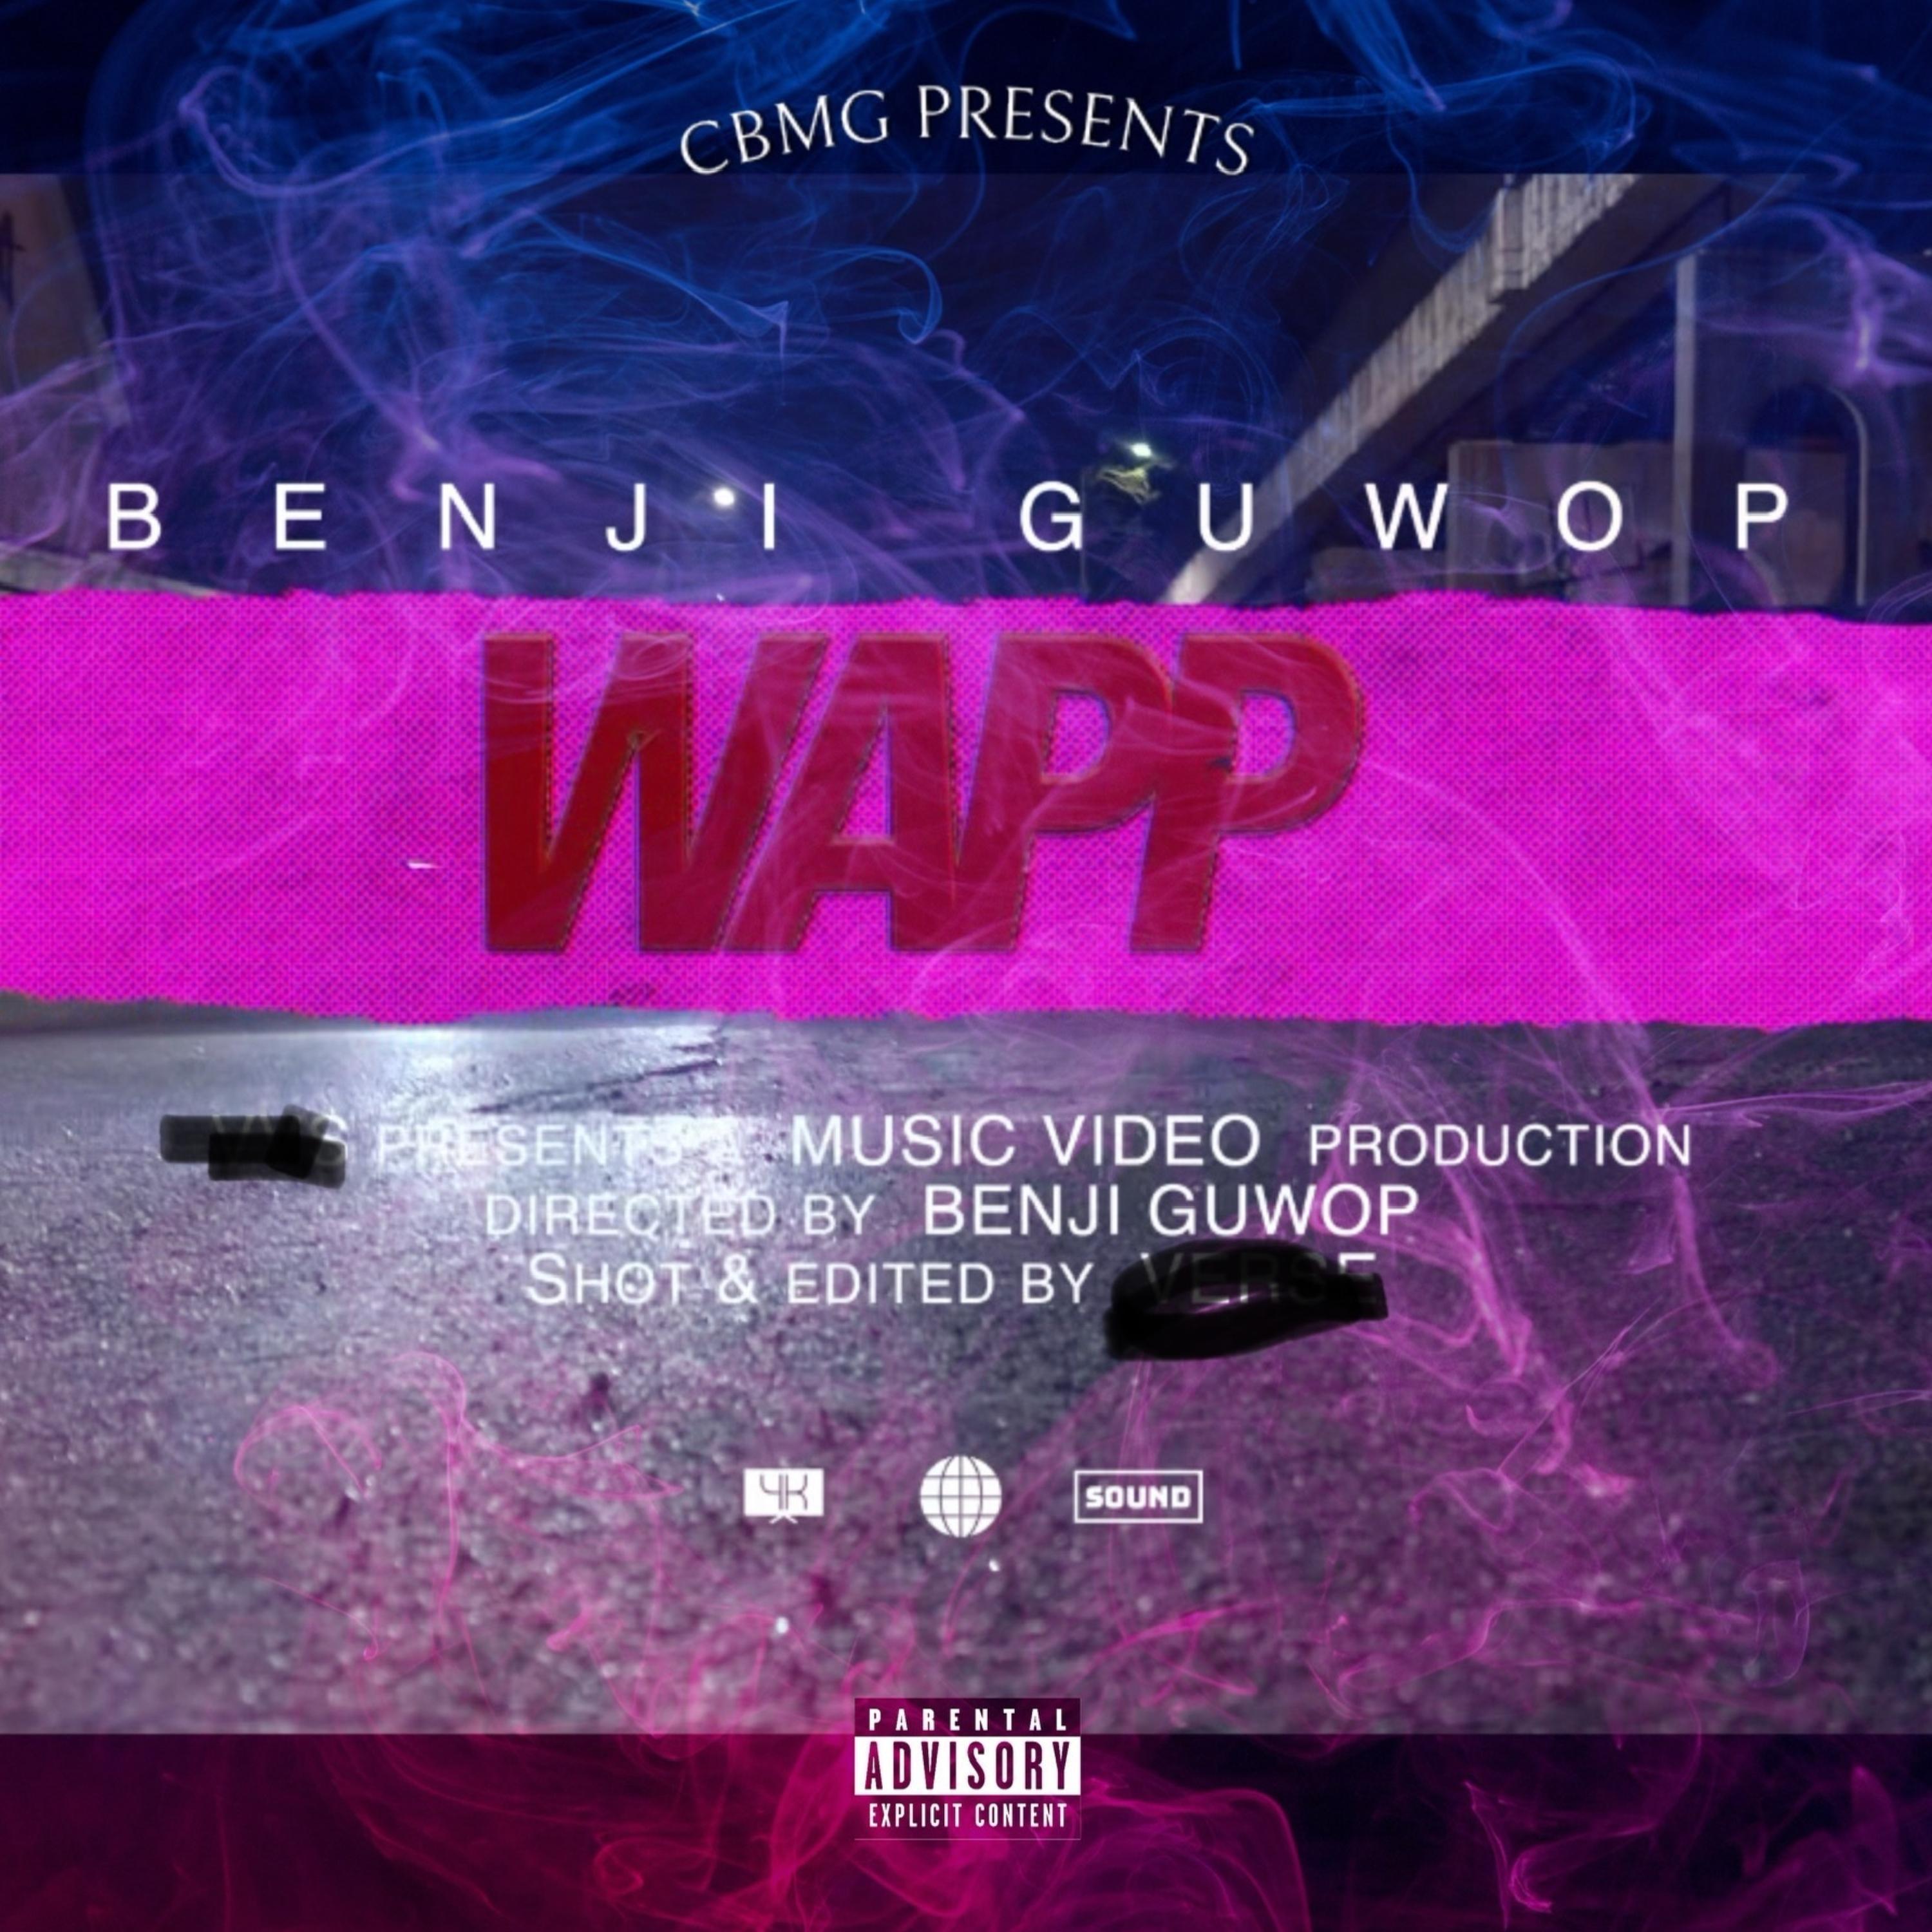 Benji Guwop - Wapp